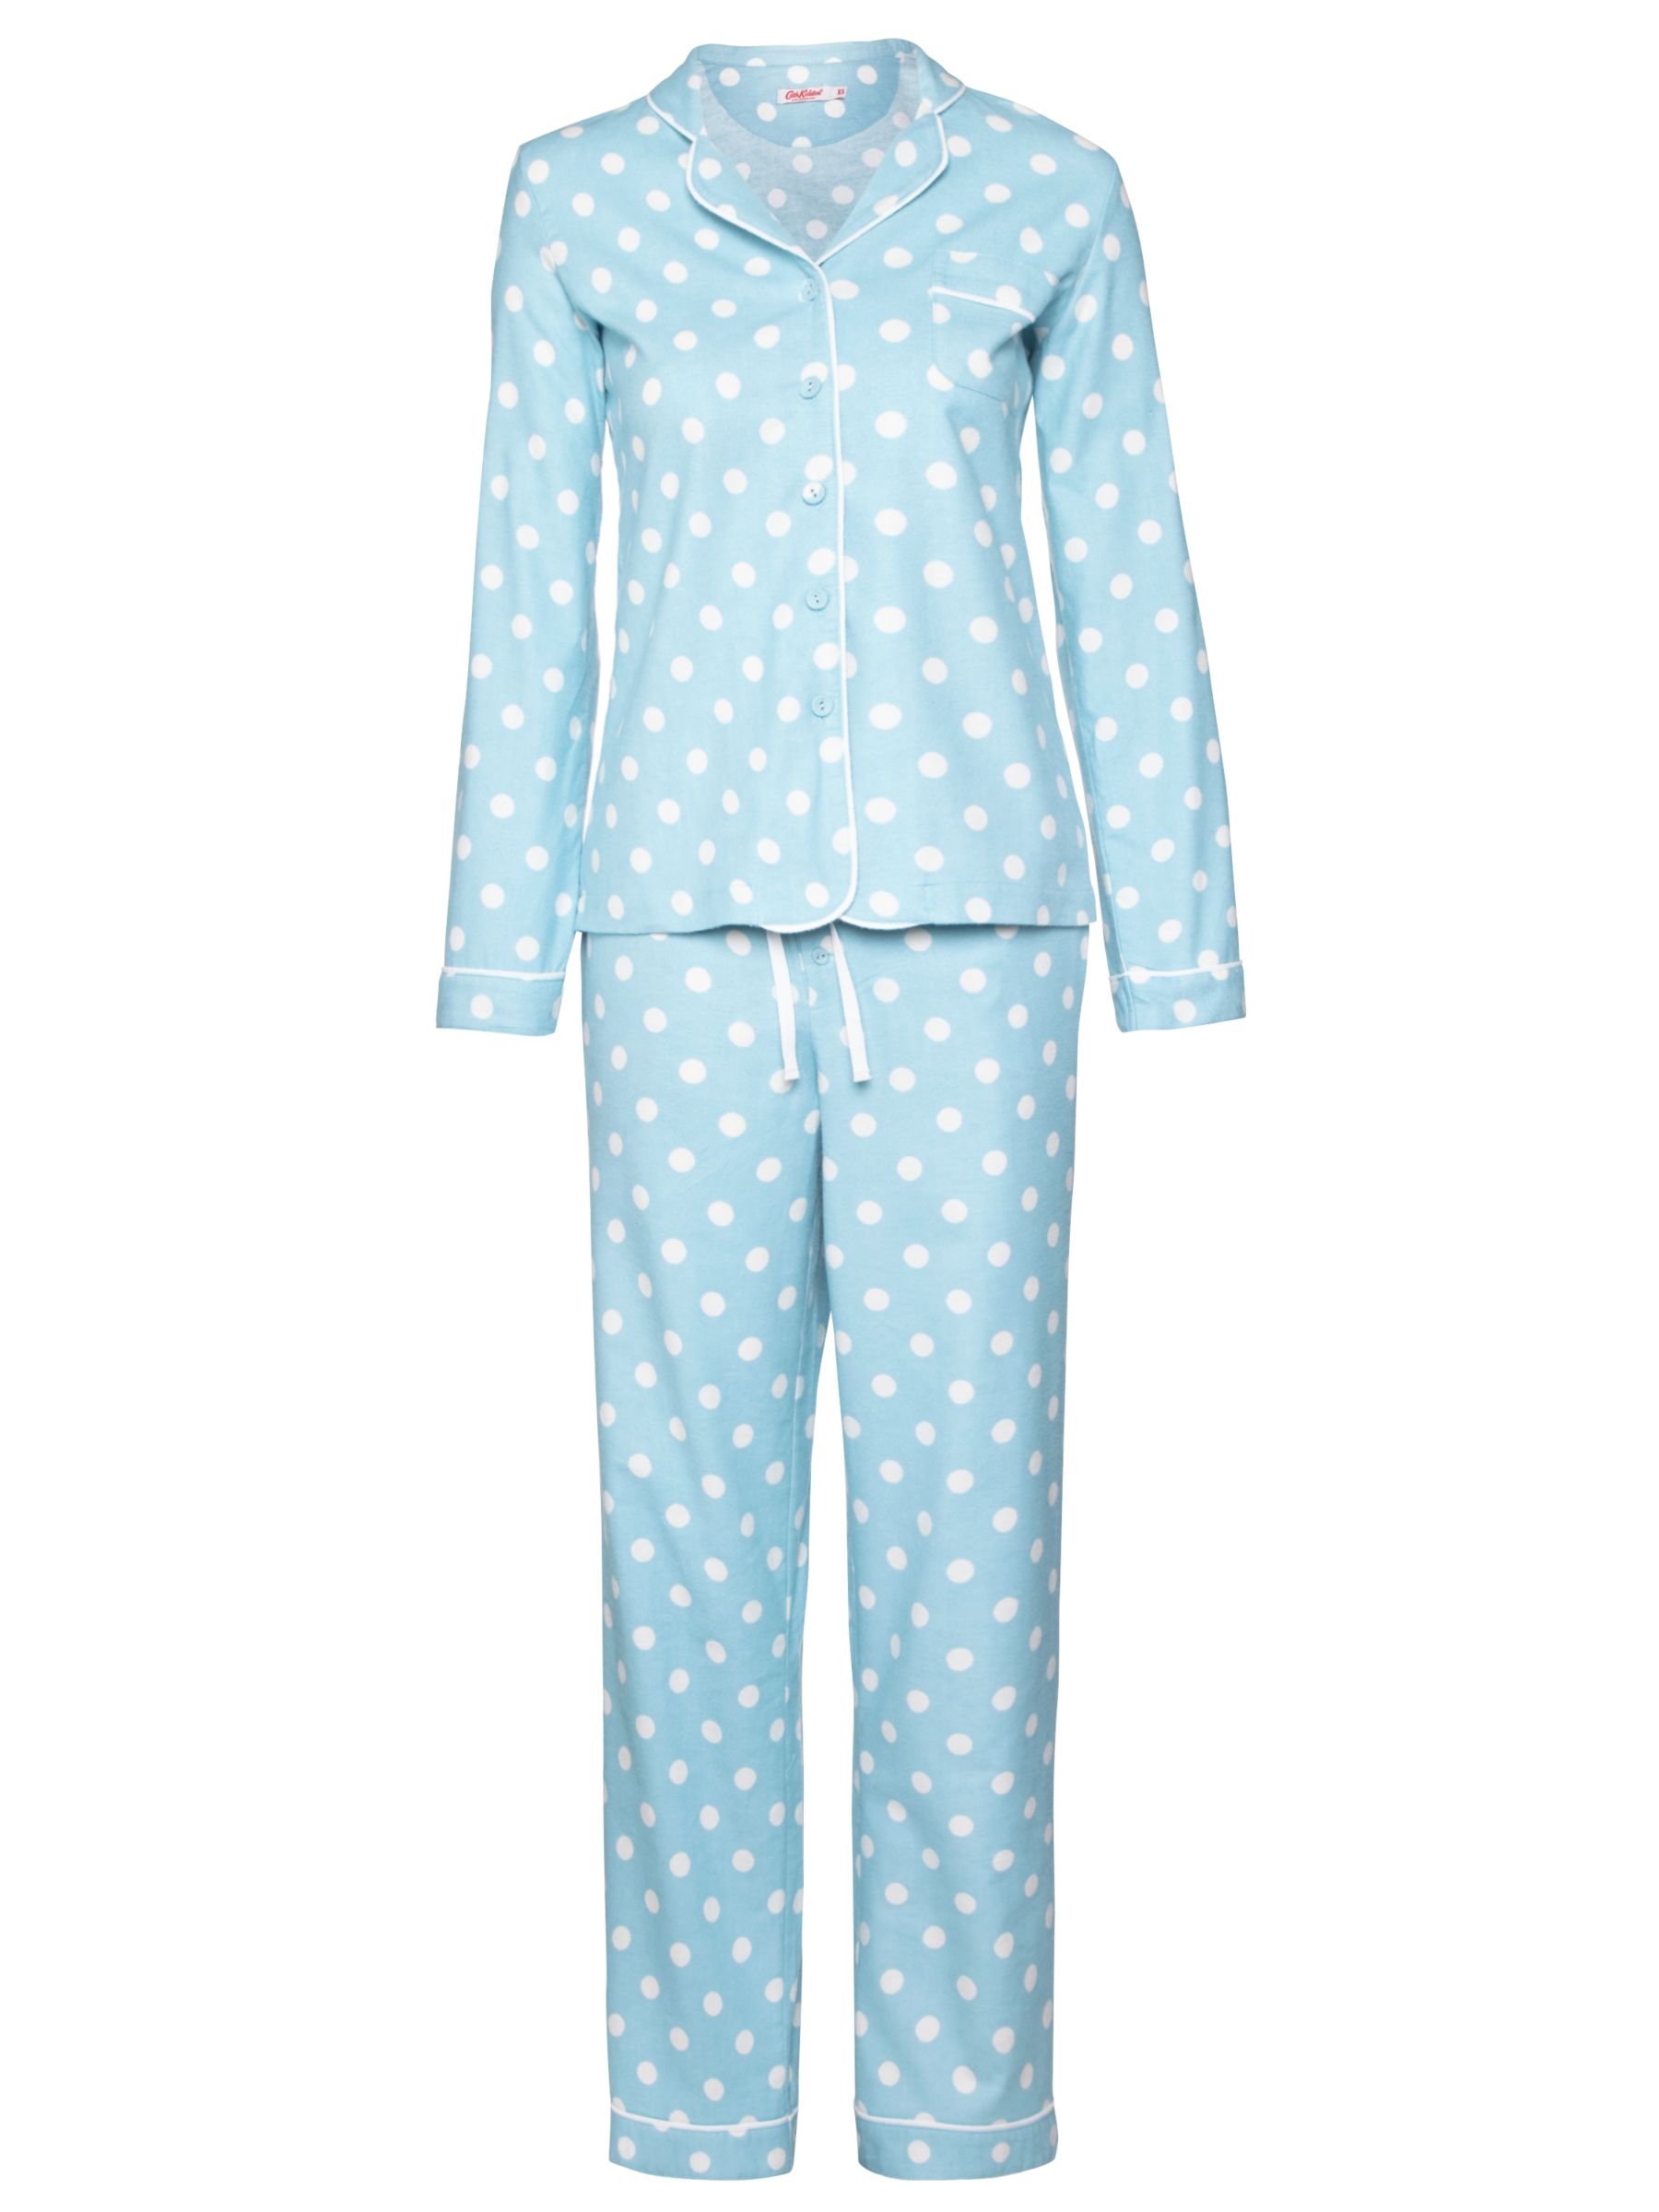 cath kidston pyjamas sale